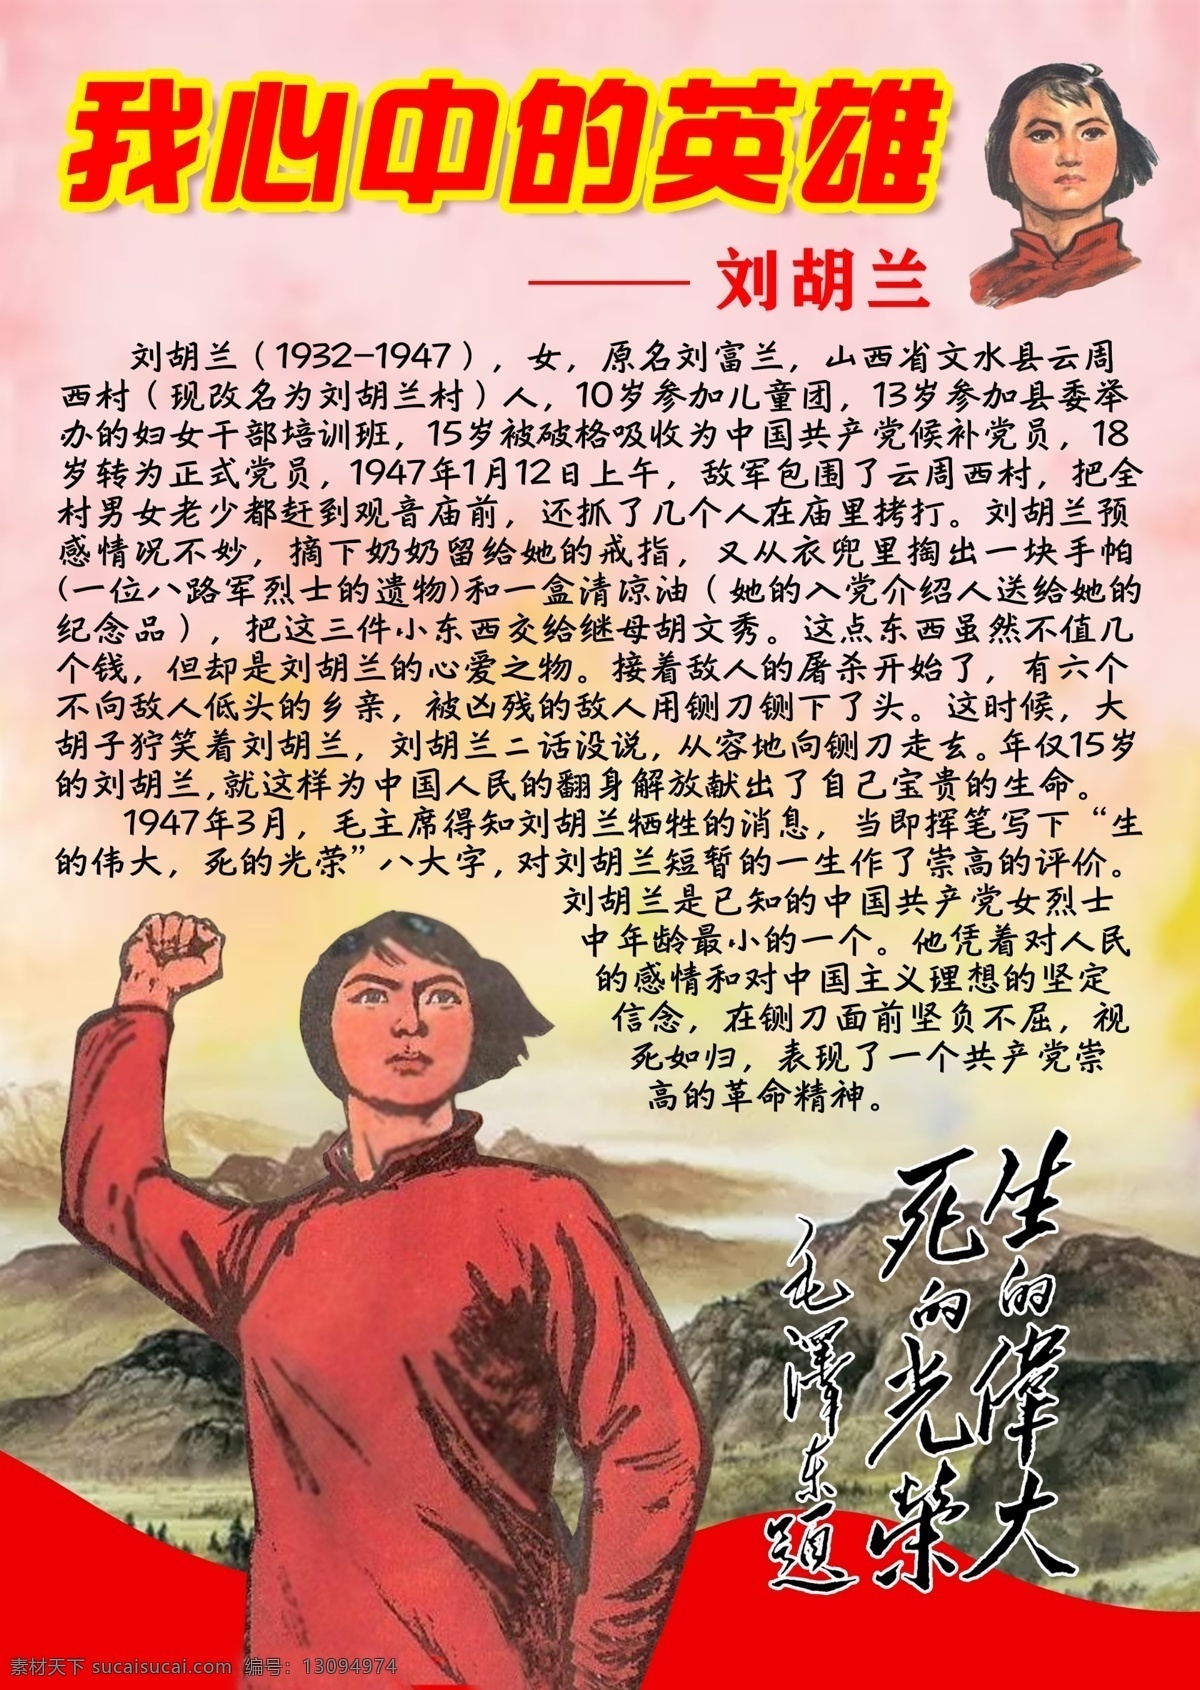 革命 英烈 英雄 刘胡兰 卡 祭 心中 毛泽东提词 生 伟大 死 光荣 清明节祭英烈 寄语